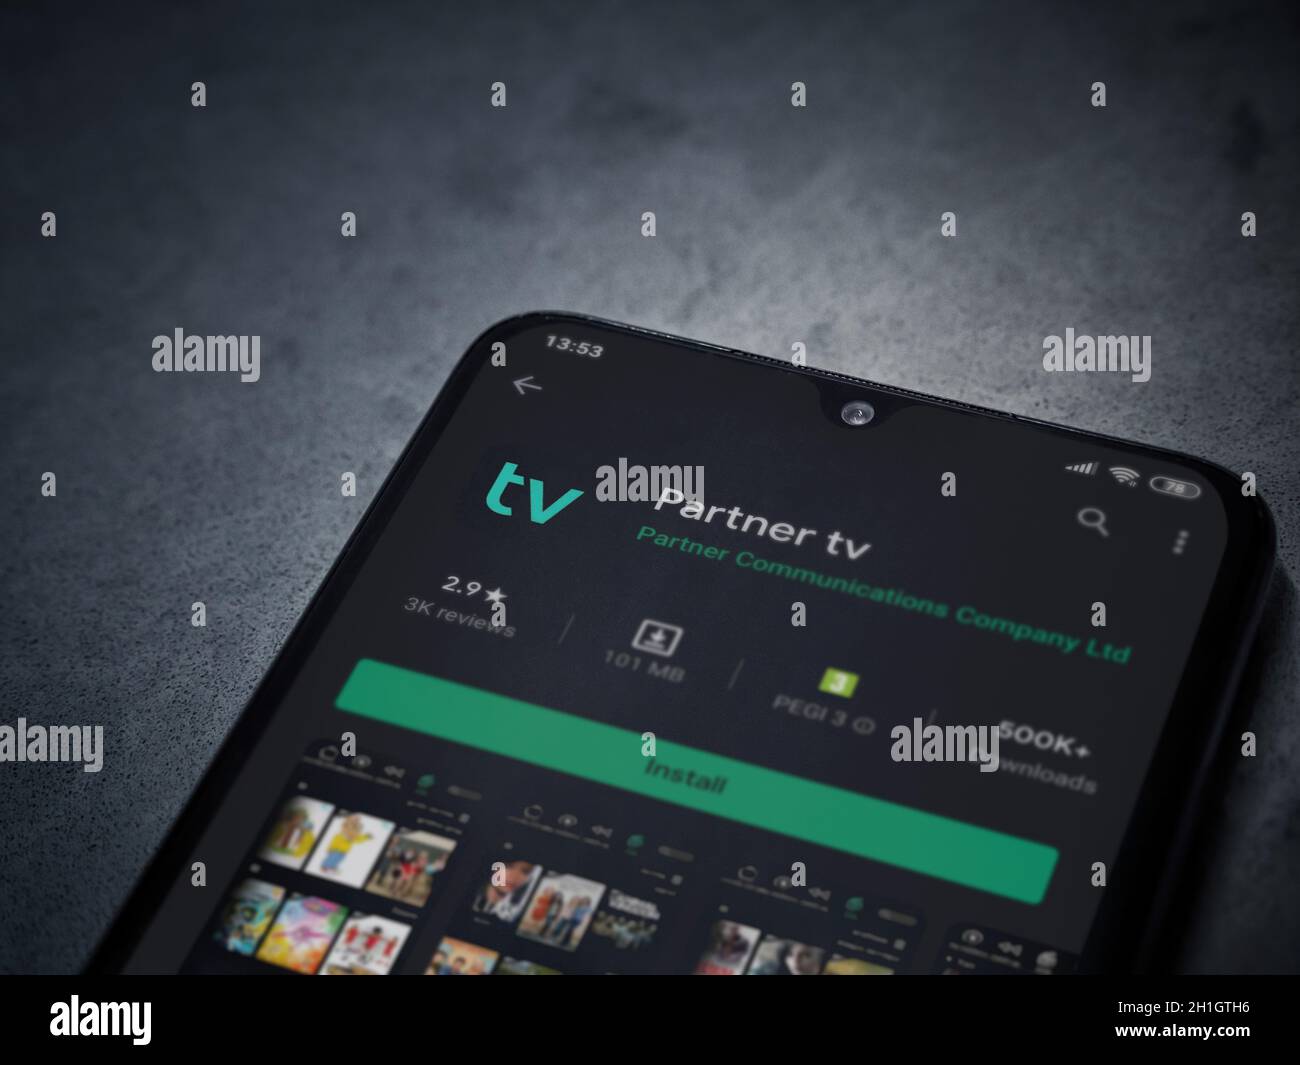 LOD, Israele - 8 luglio 2020: App partner tv play store page sul display di uno smartphone nero su sfondo di marmo scuro in pietra. Vista dall'alto piatta Foto Stock